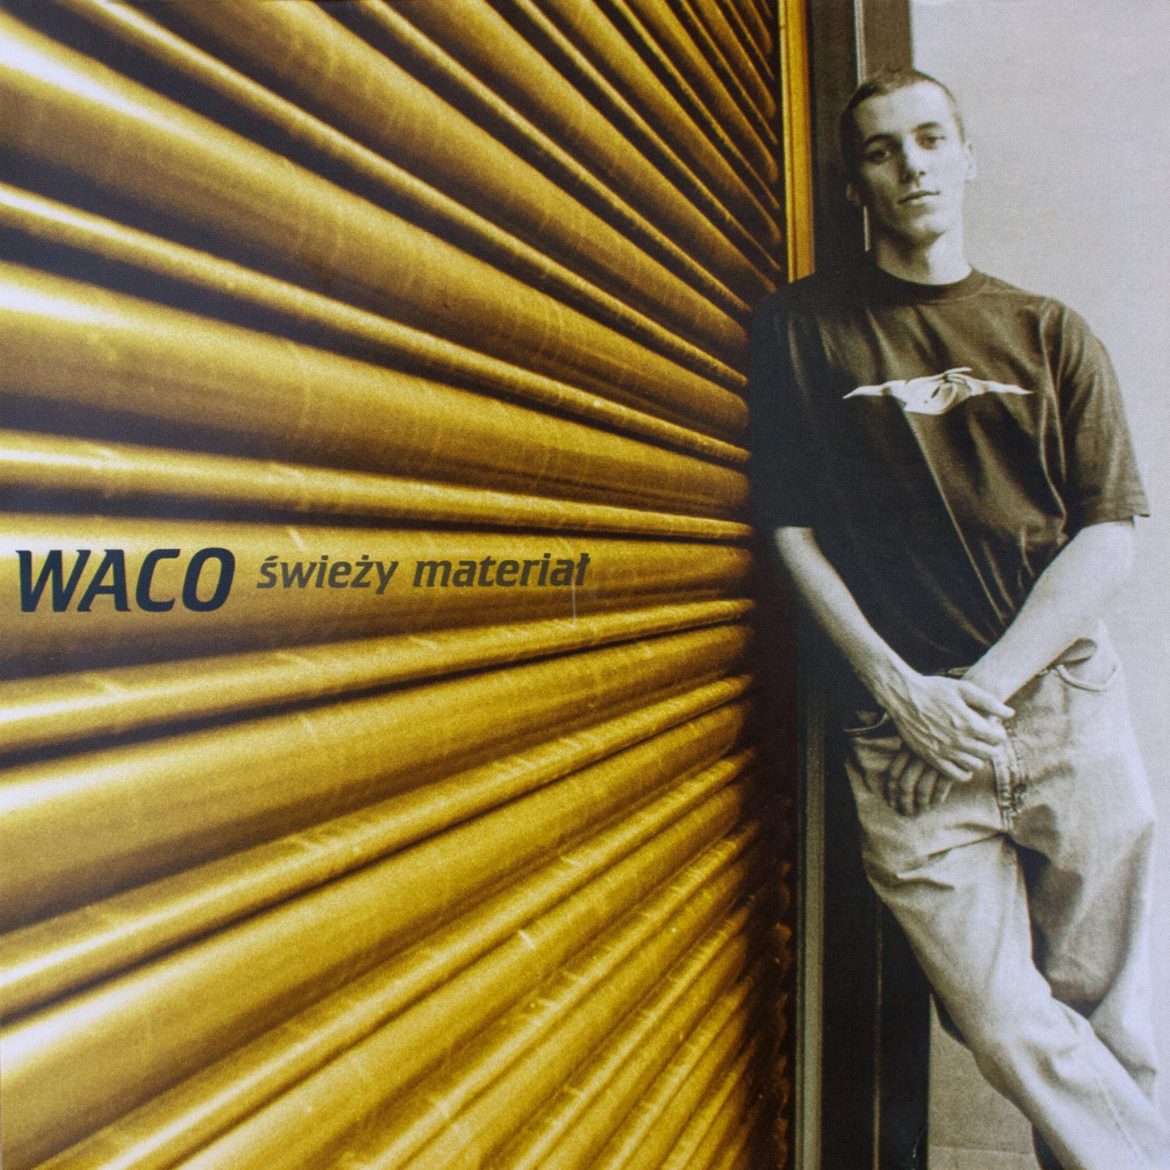 Kultowy album Waco w serwisach cyfrowych. 19 lat po premierze